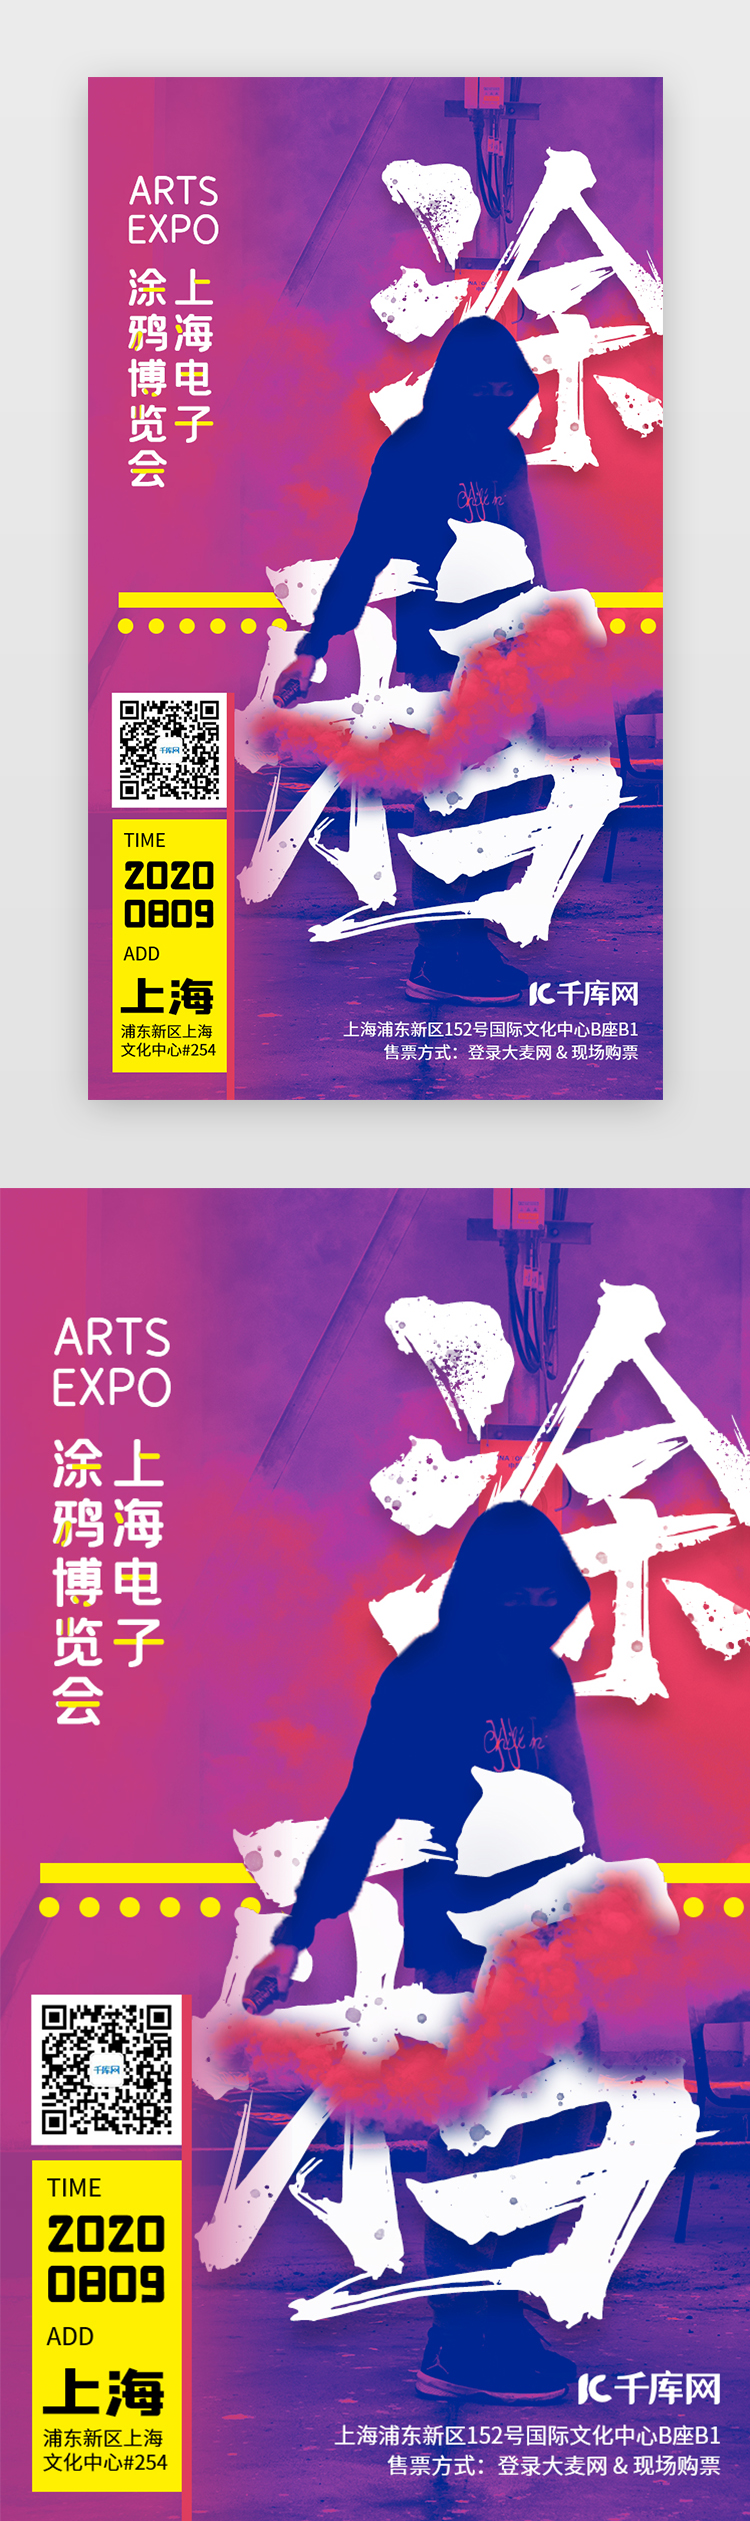 彩色街头涂鸦手绘博览会艺术手机海报闪屏图片